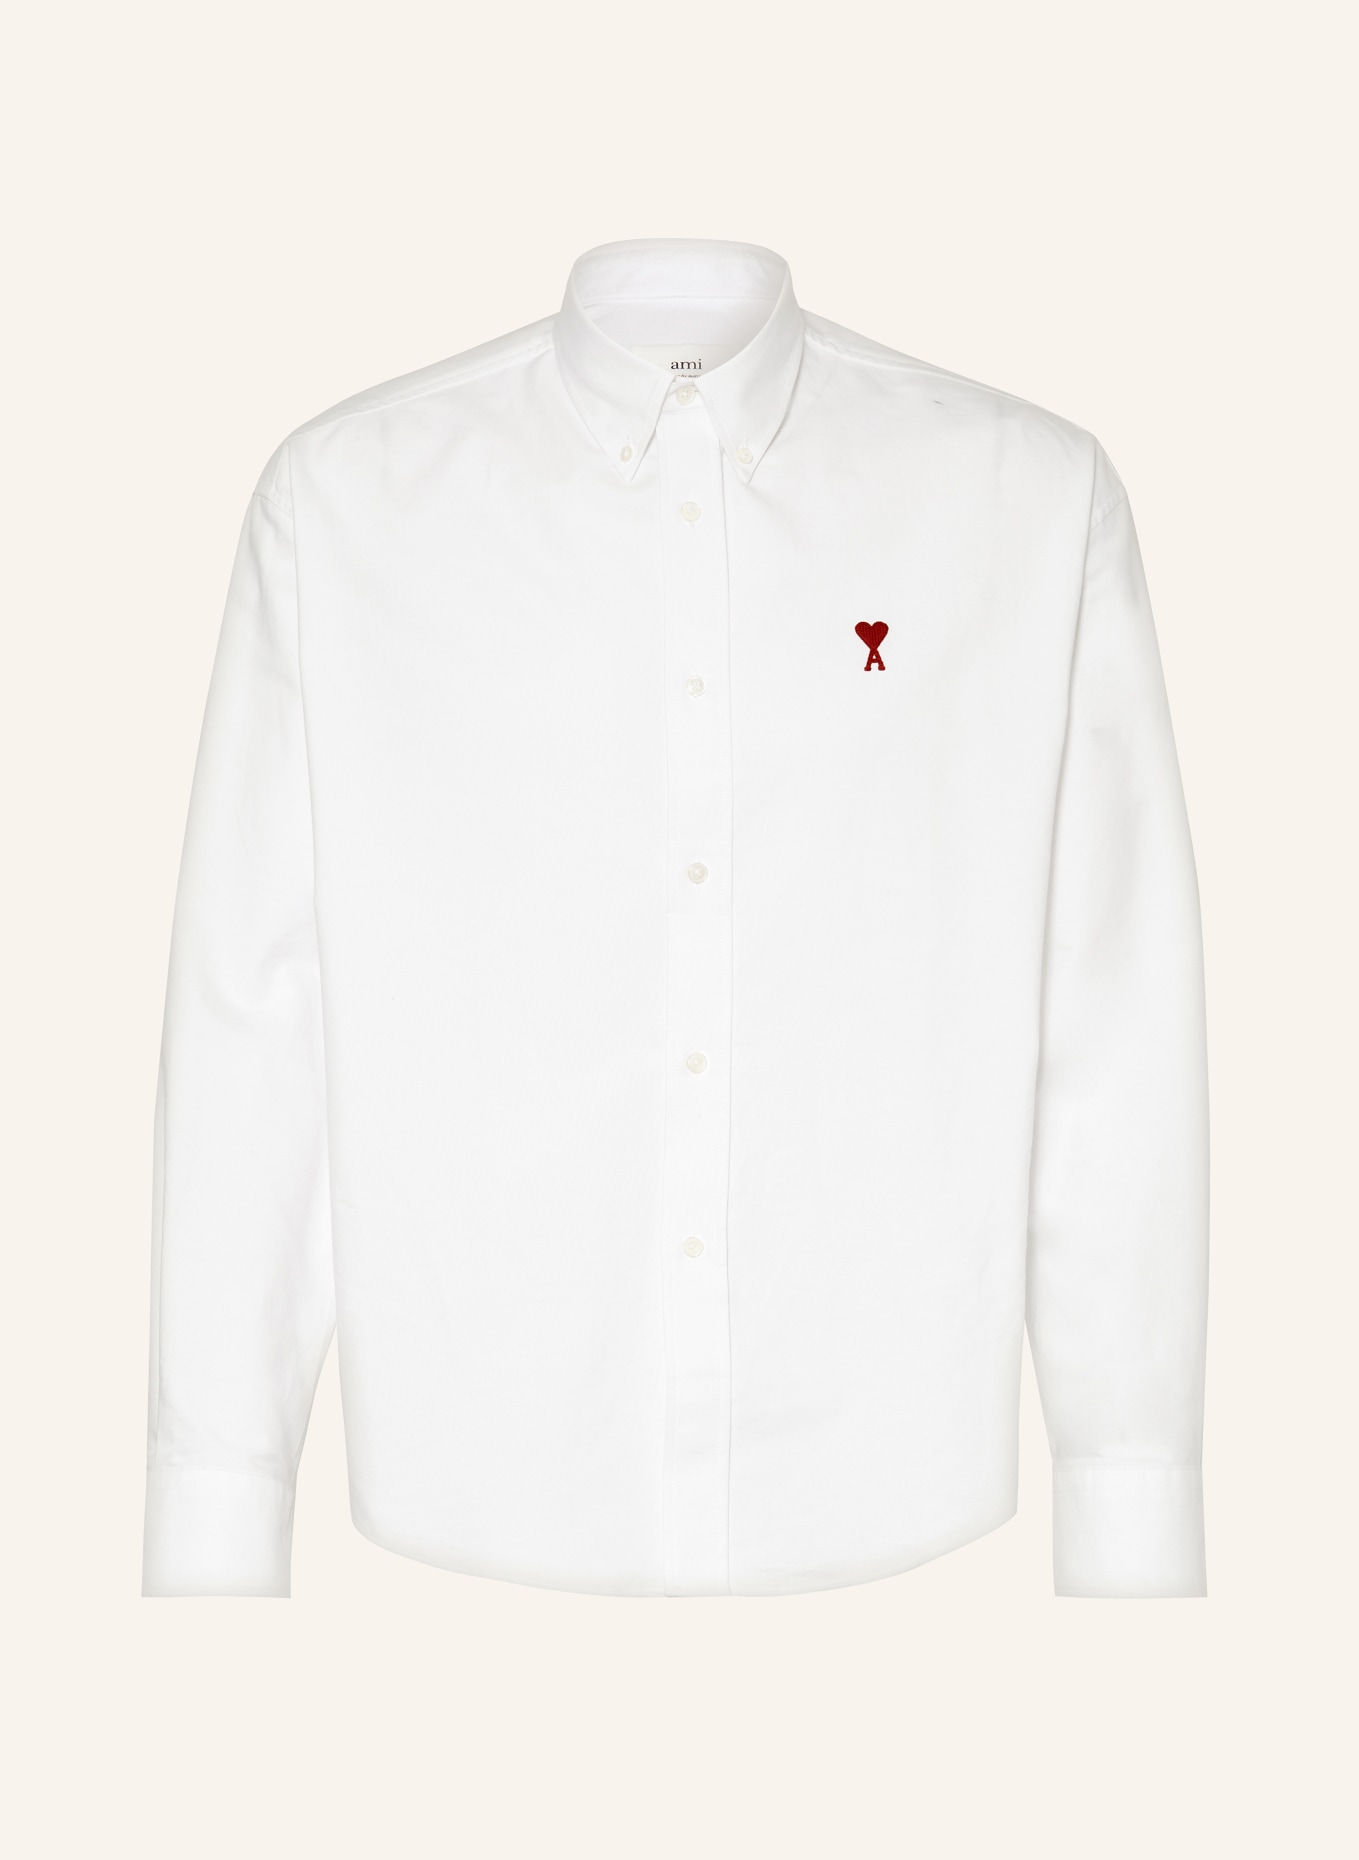 AMI PARIS Oxford shirt classic fit, Color: WHITE (Image 1)